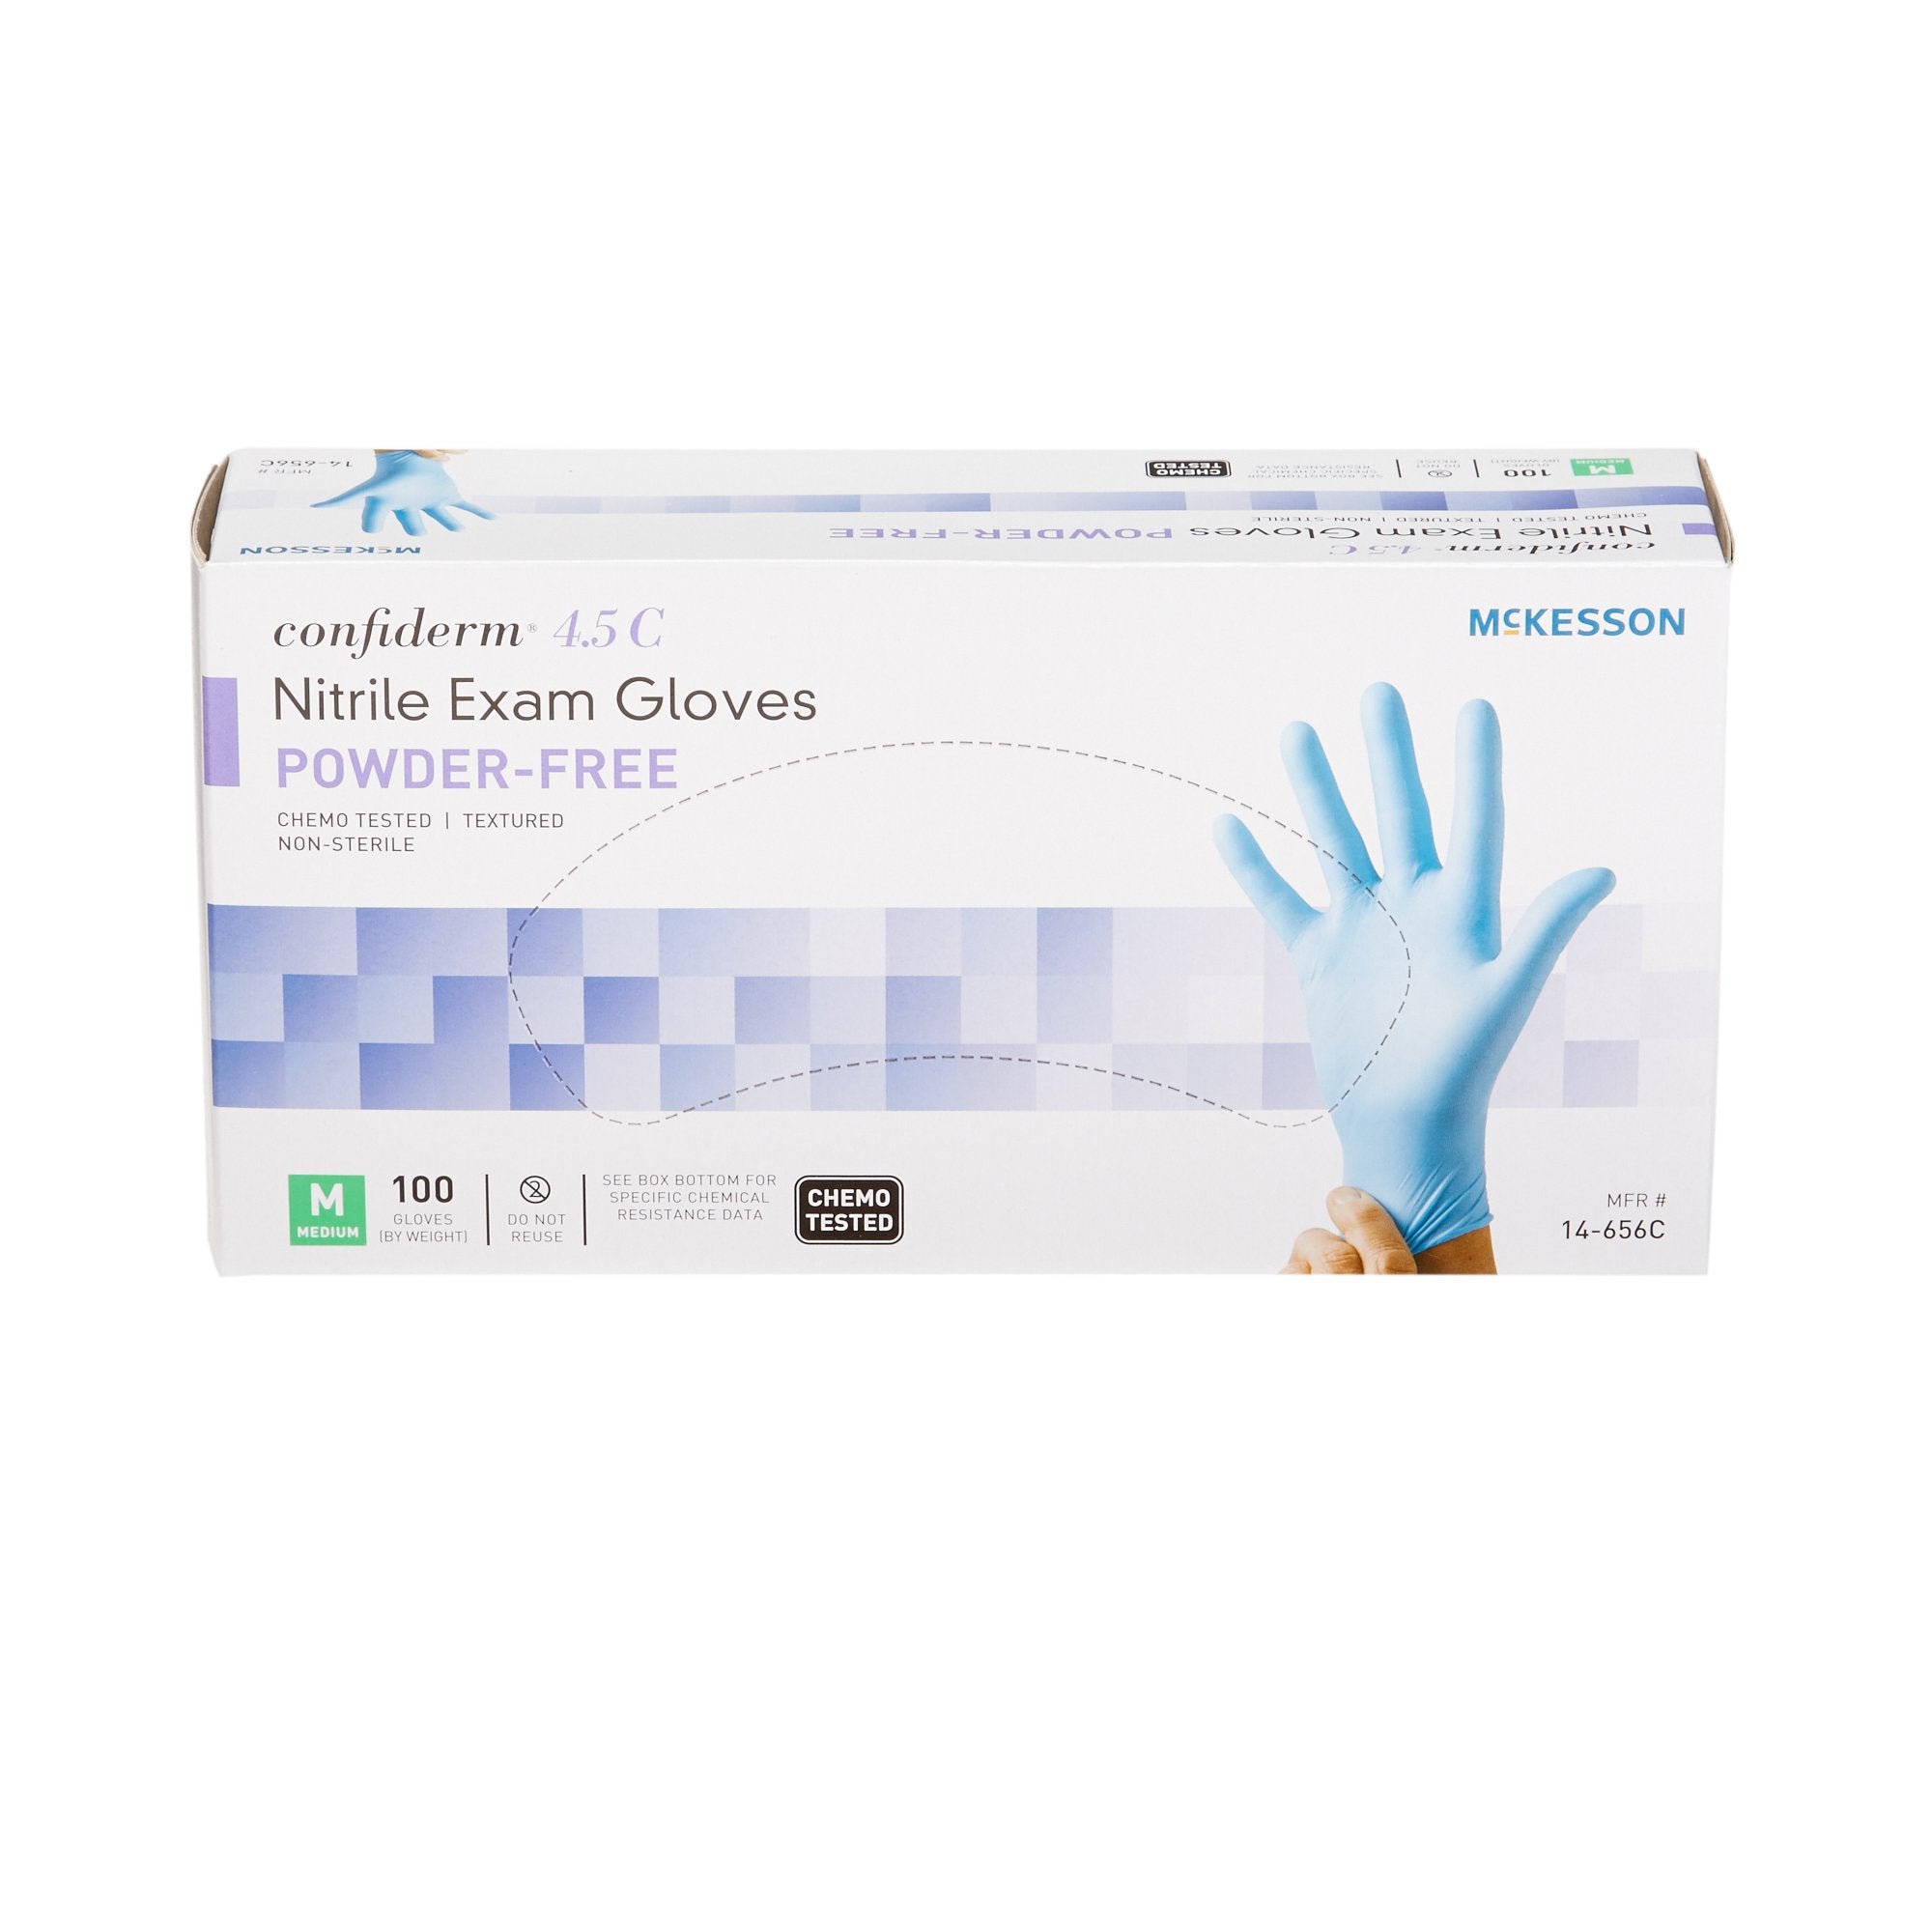 McKesson Confiderm 4.5C Nitrile Exam Gloves, Medium, Blue - 1000 Pack